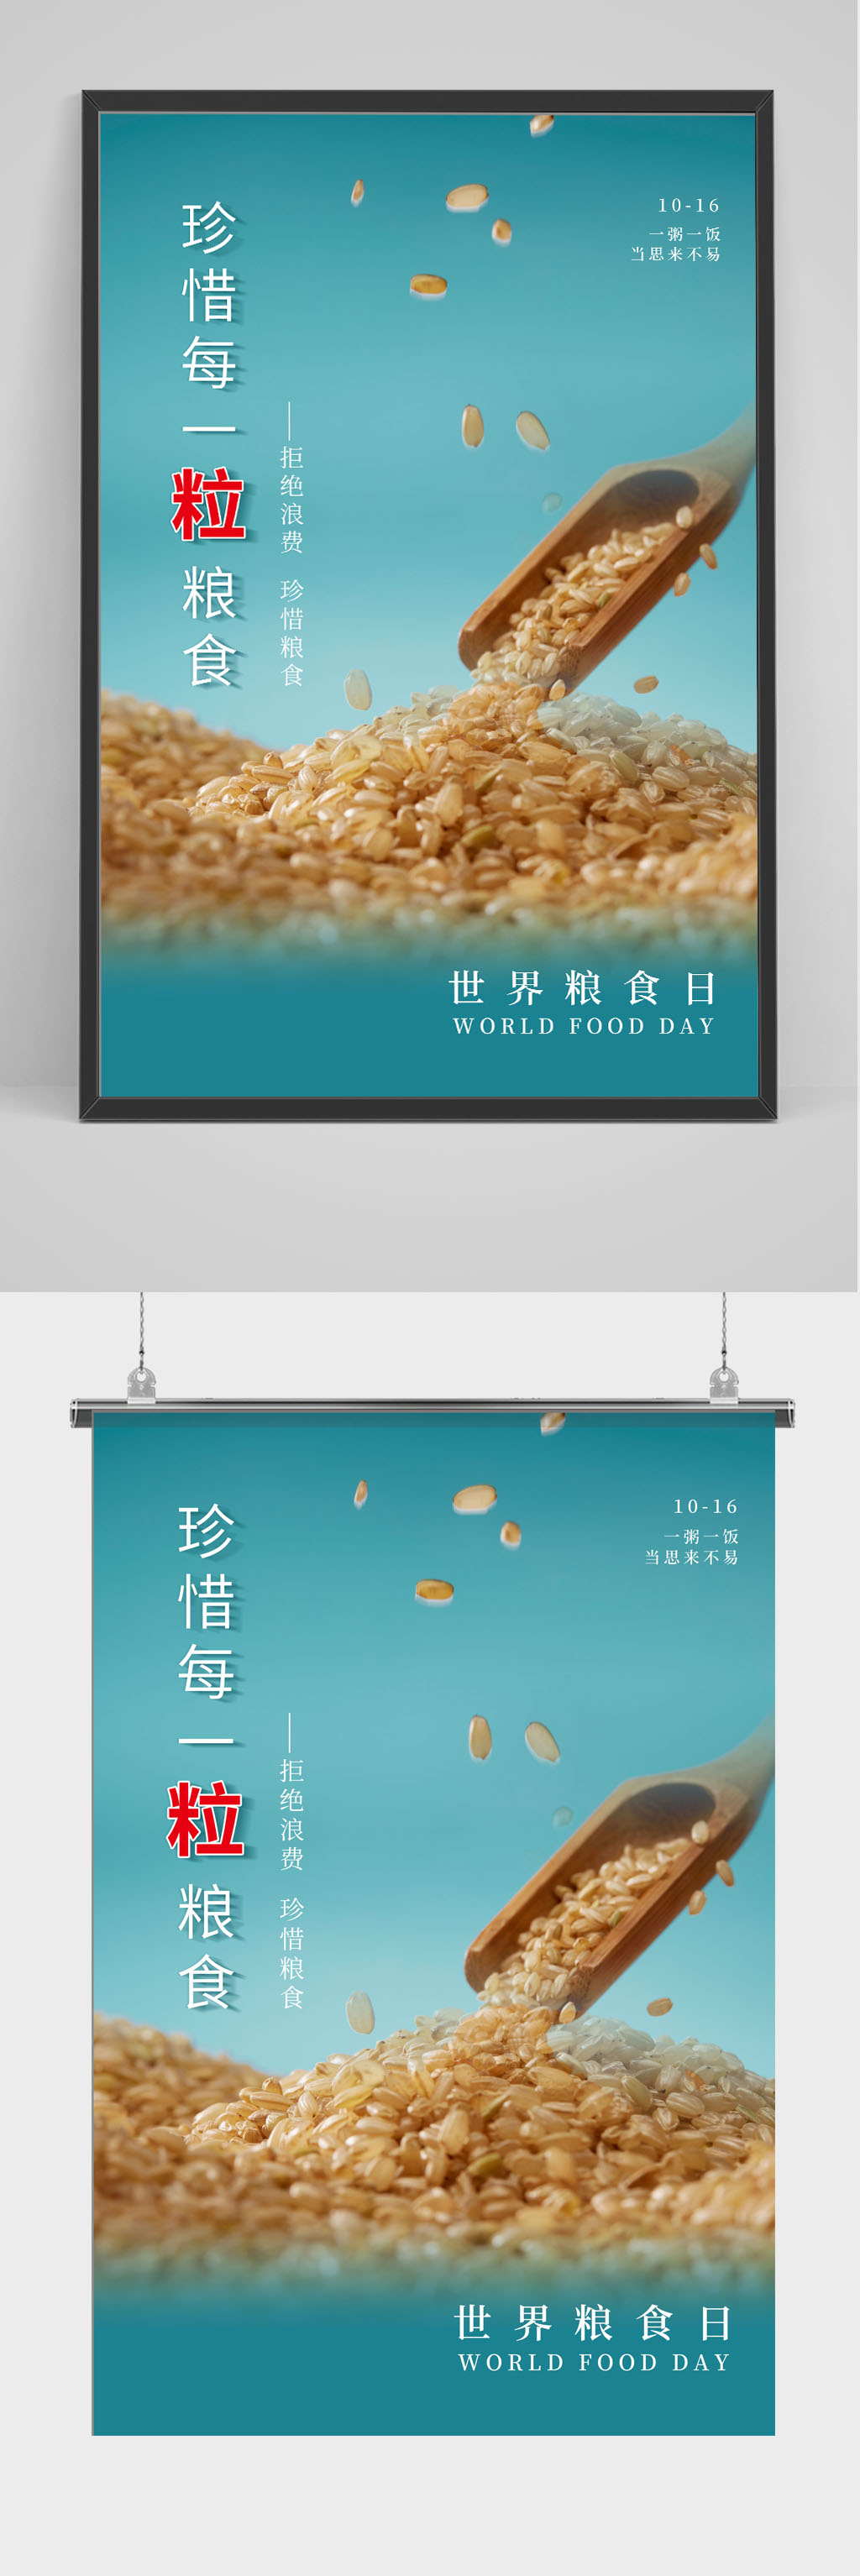 世界粮食日宣传页设计图片